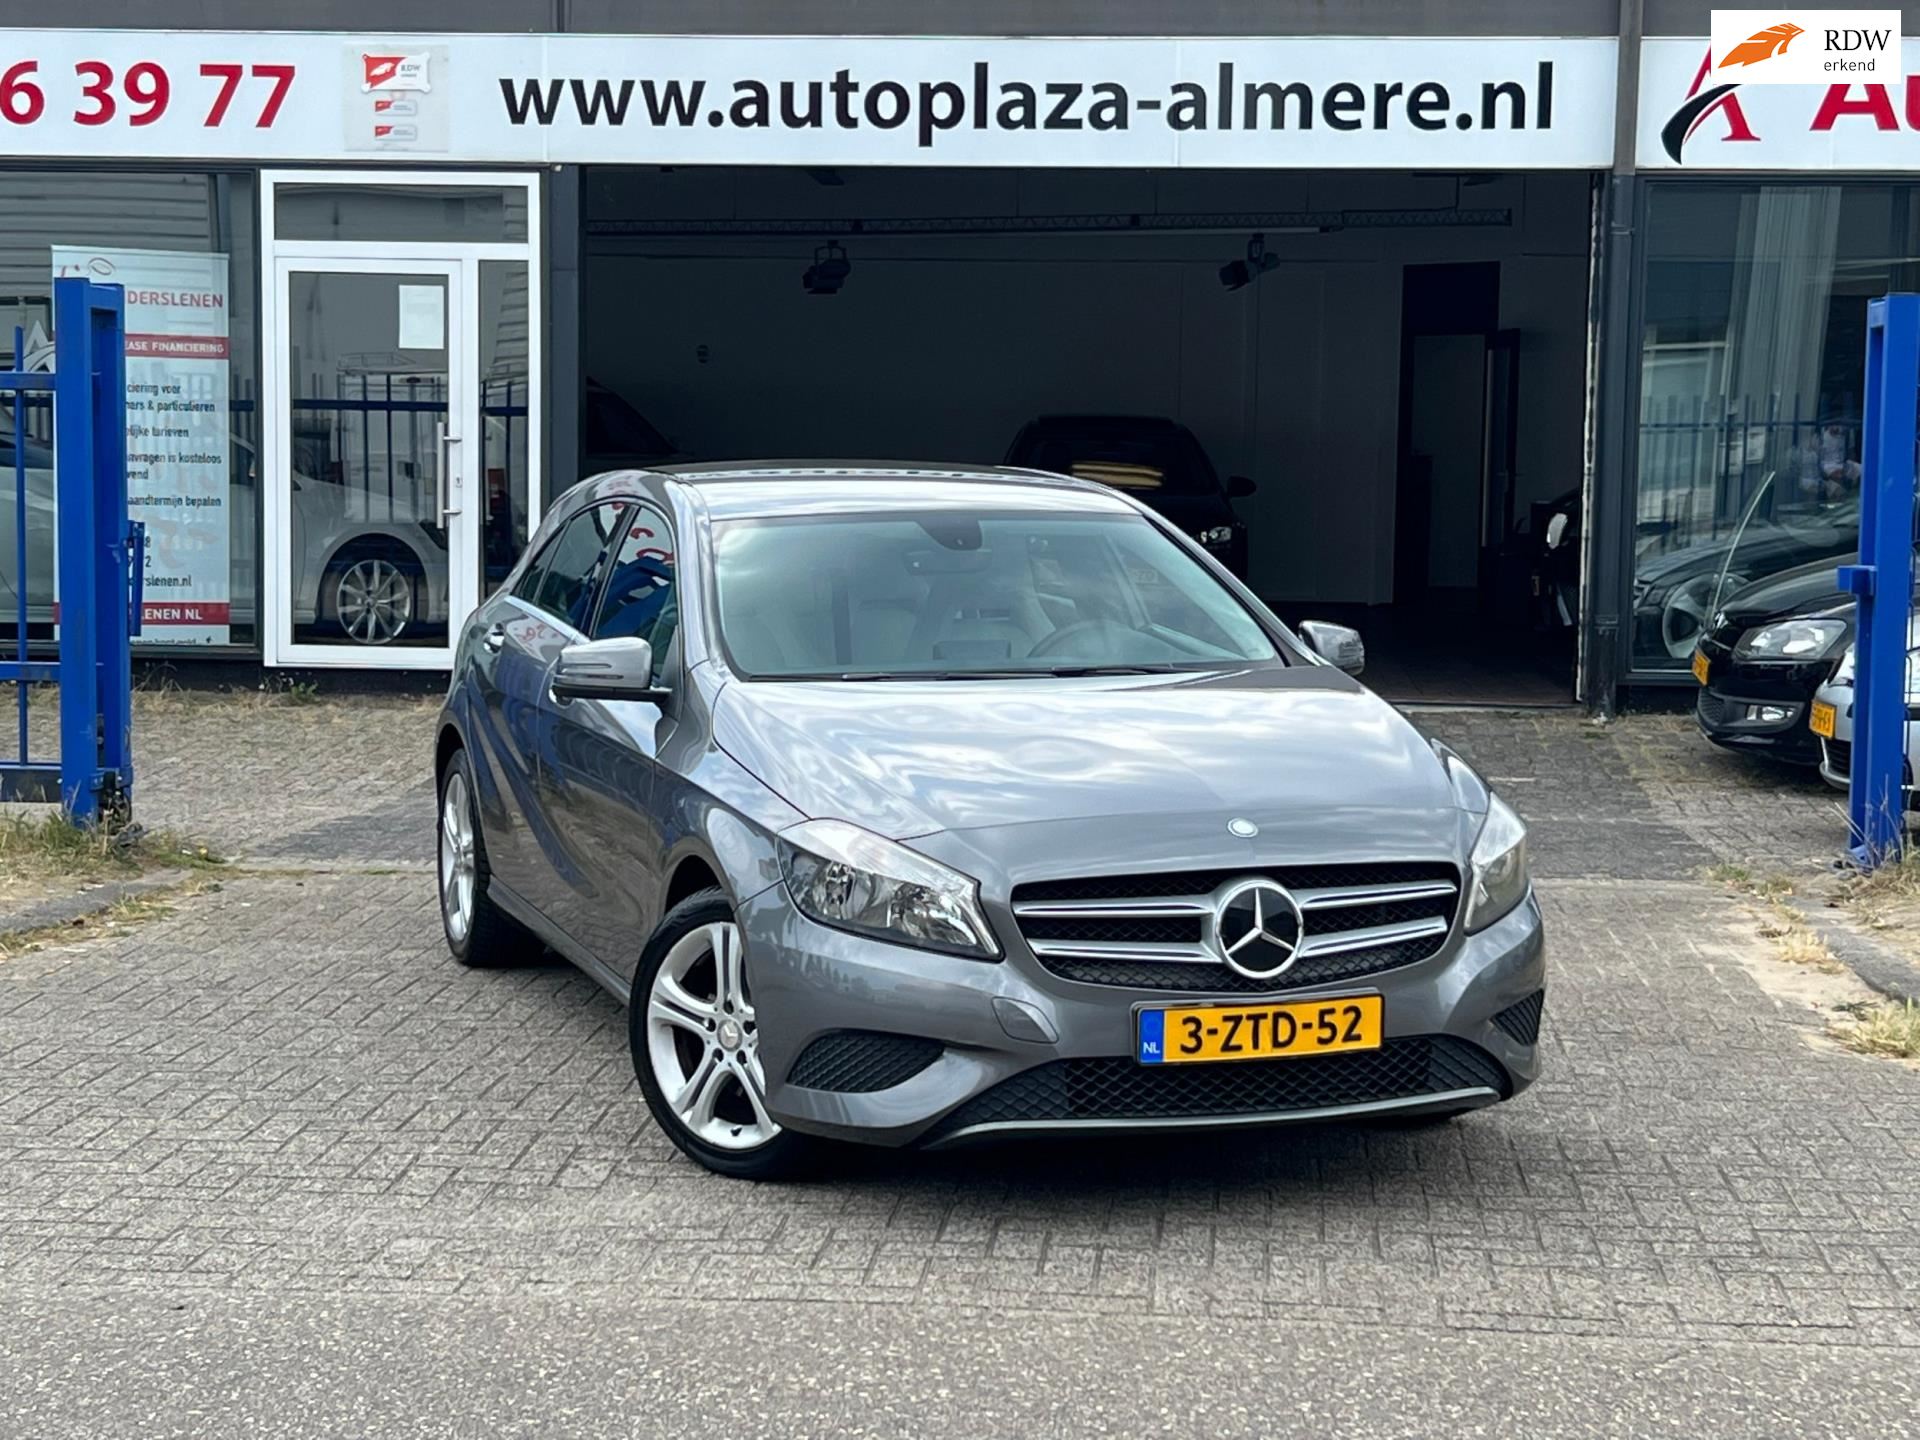 Mercedes-Benz A-klasse occasion - Auto Plaza Almere